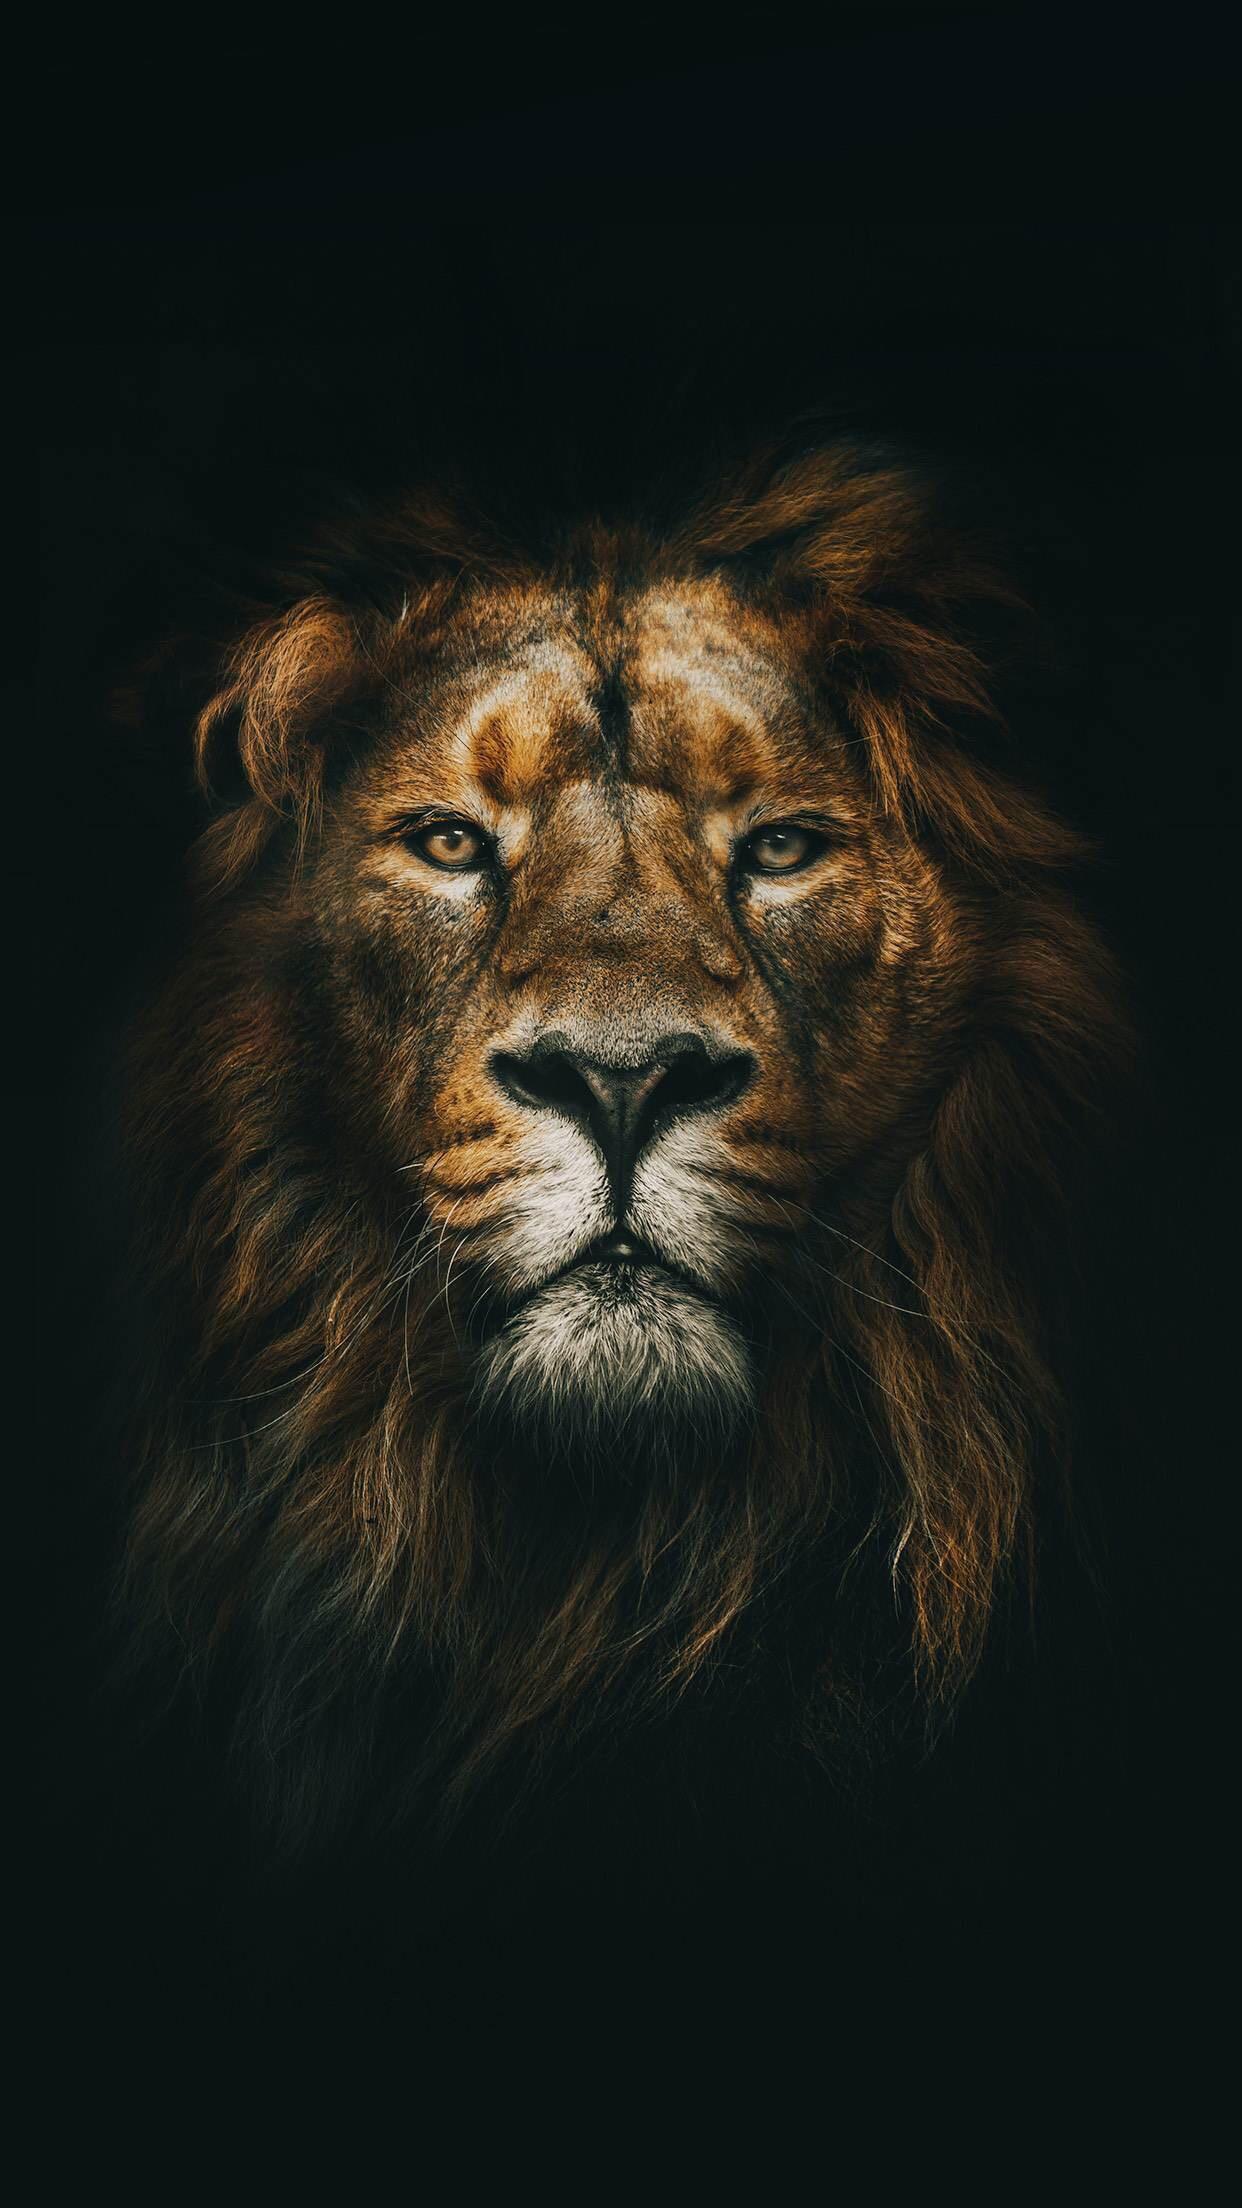 1080x1920 Lion Wallpaper Hd Animals Lion Iphone 6 Plus Wallpaper  Animals  Animals beautiful Wild cats